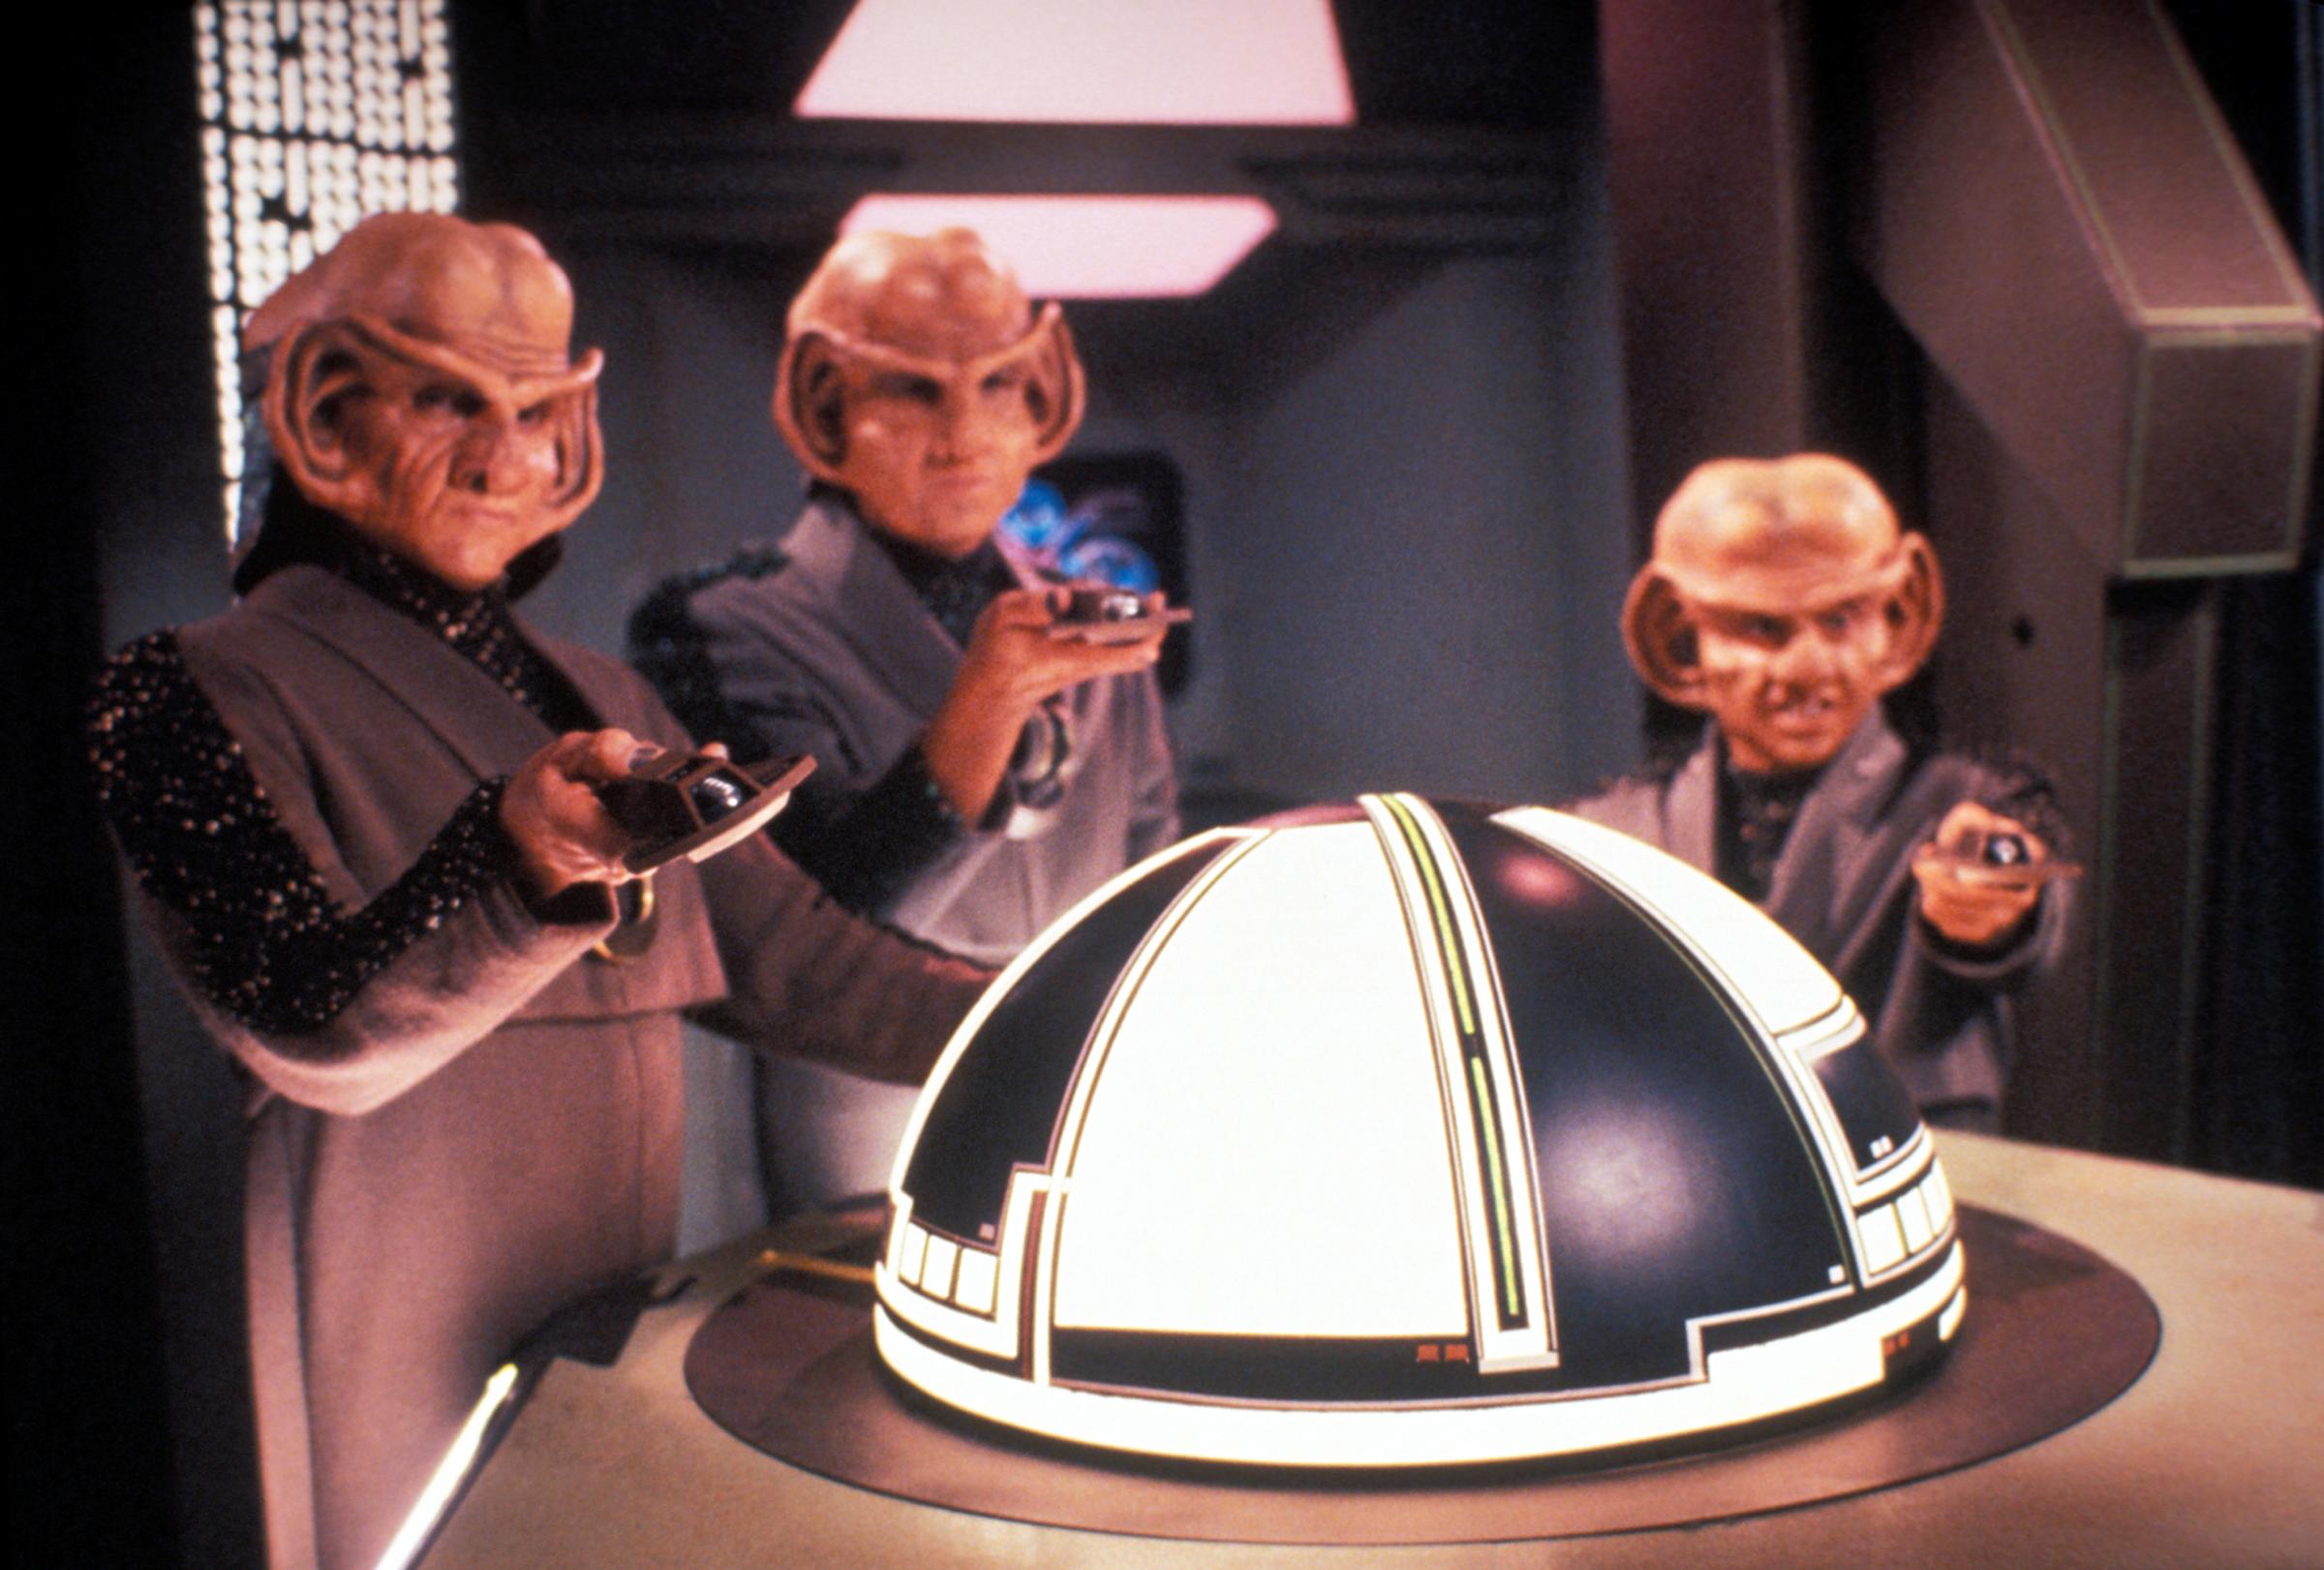 Three Ferengi in Star Trek: The Next Generation, May 2, 1994 .